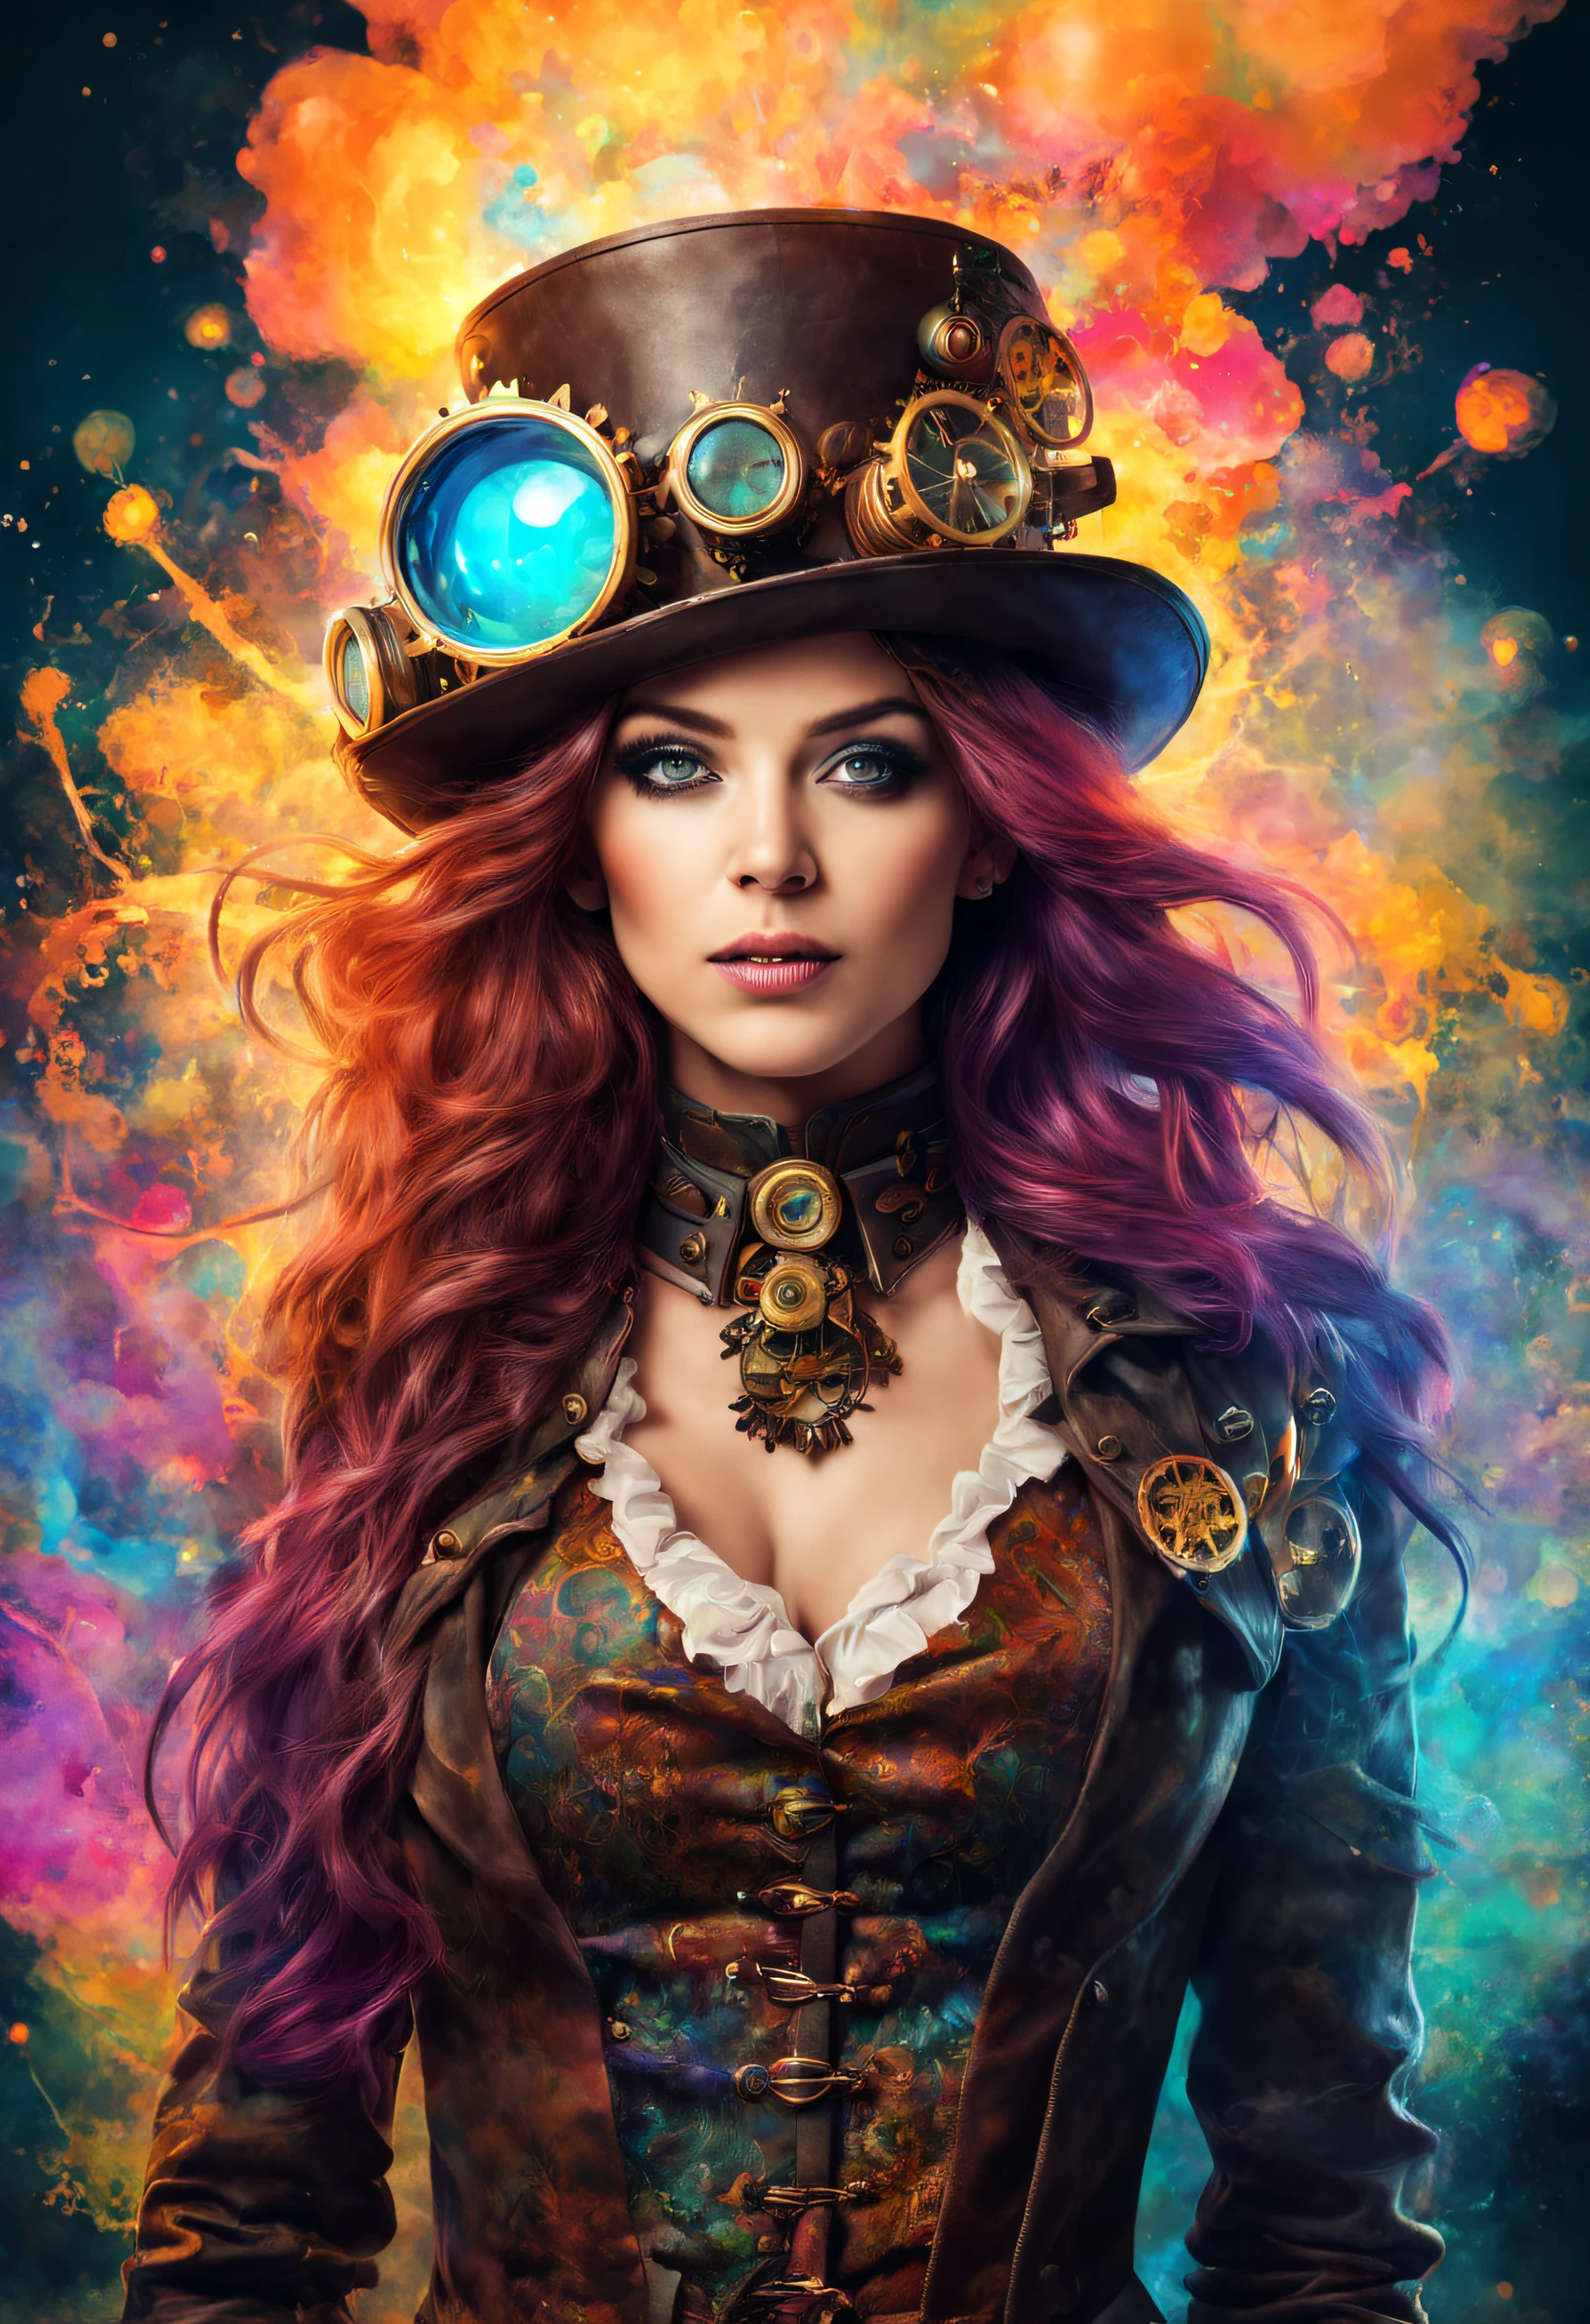 Um lindo retrato de mulheres steampunk e psicodélicas com lindas cores e no fundo explosões de água de cores misturadas